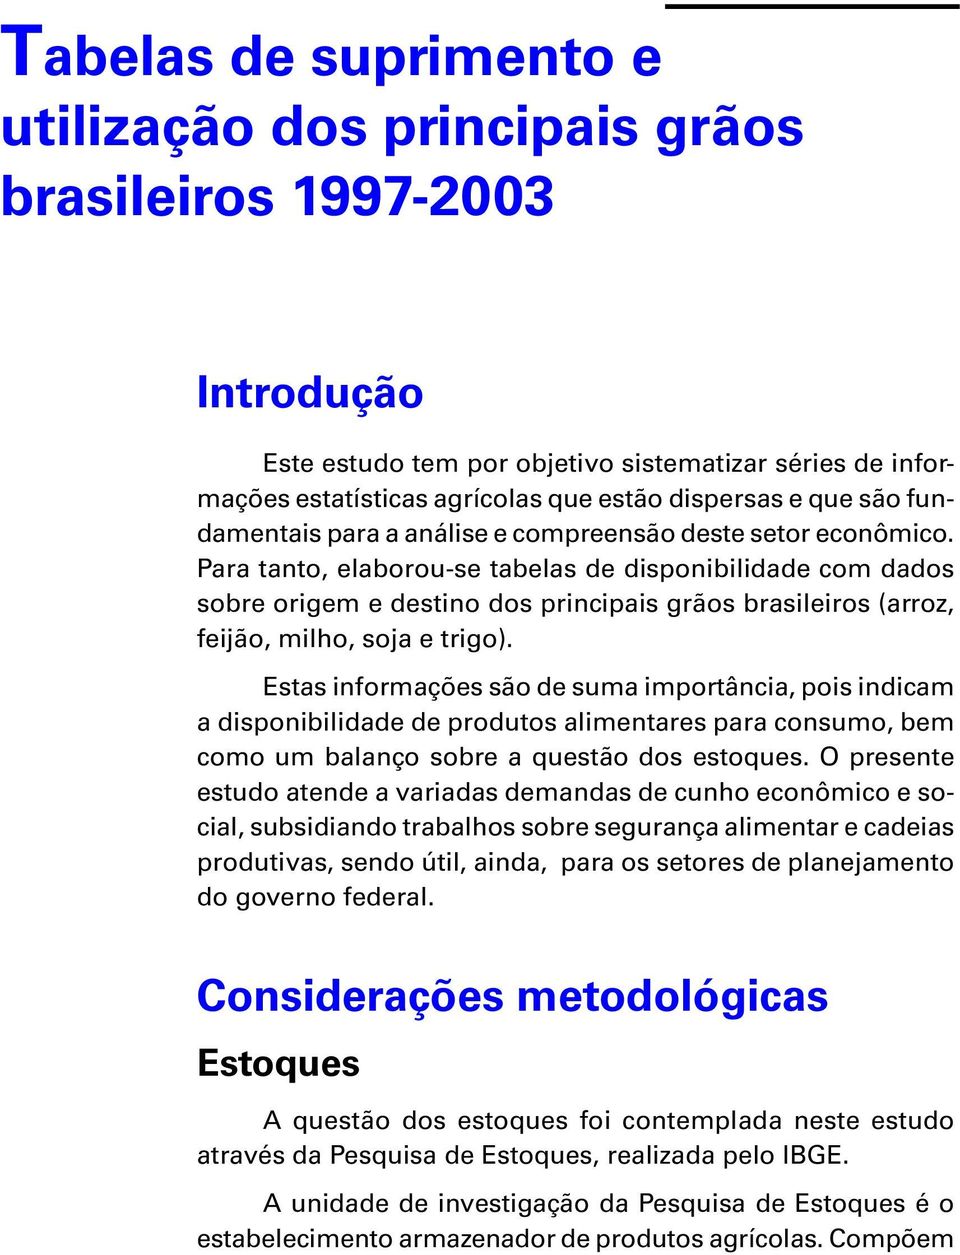 Para tanto, elaborou-se tabelas de disponibilidade com dados sobre origem e destino dos principais grãos brasileiros (arroz, feijão, milho, soja e trigo).